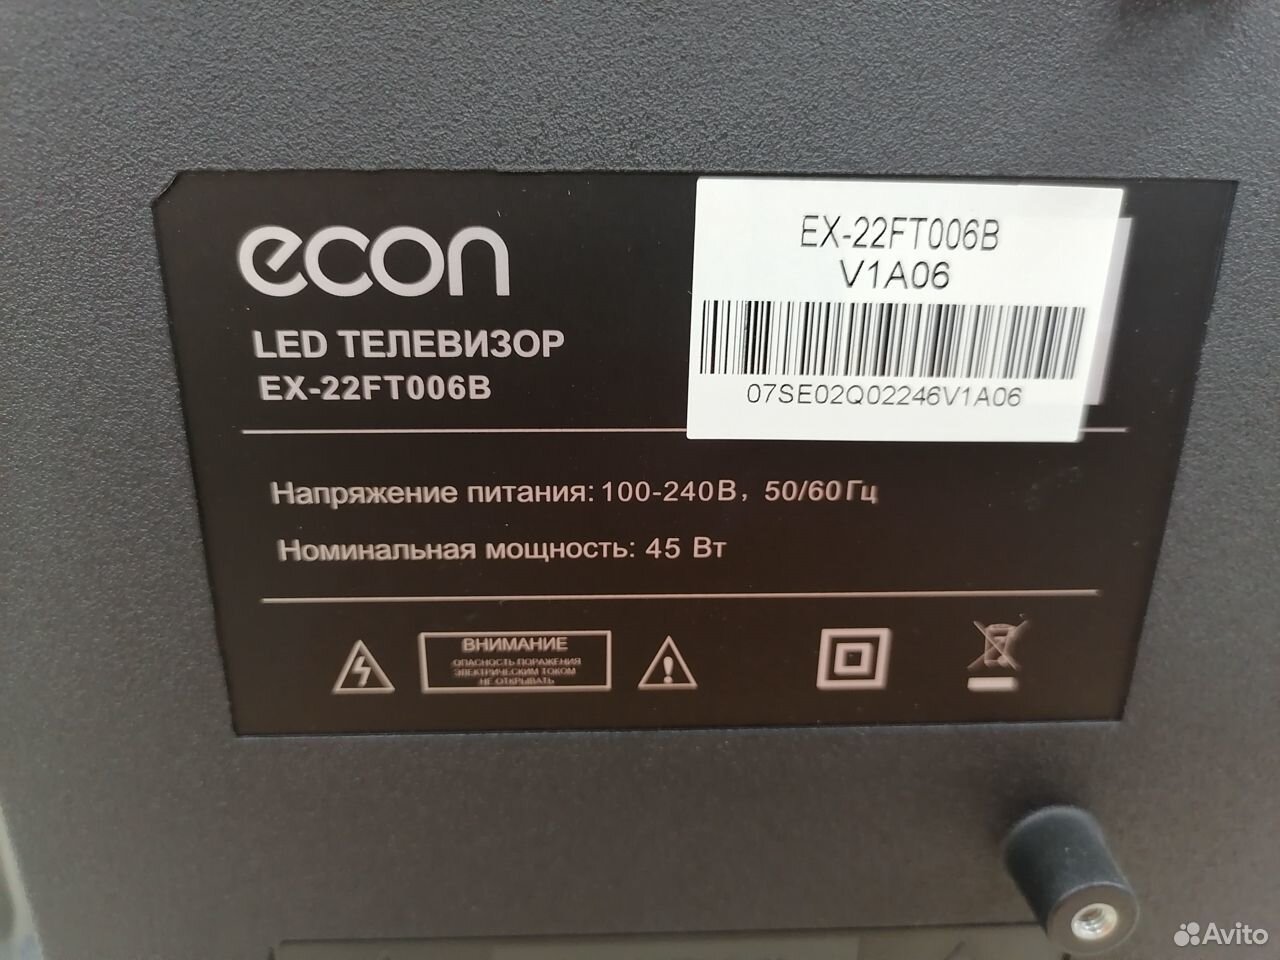 Телевизор LED econ ex-22ft006b новый (схи) 89275037380 купить 3